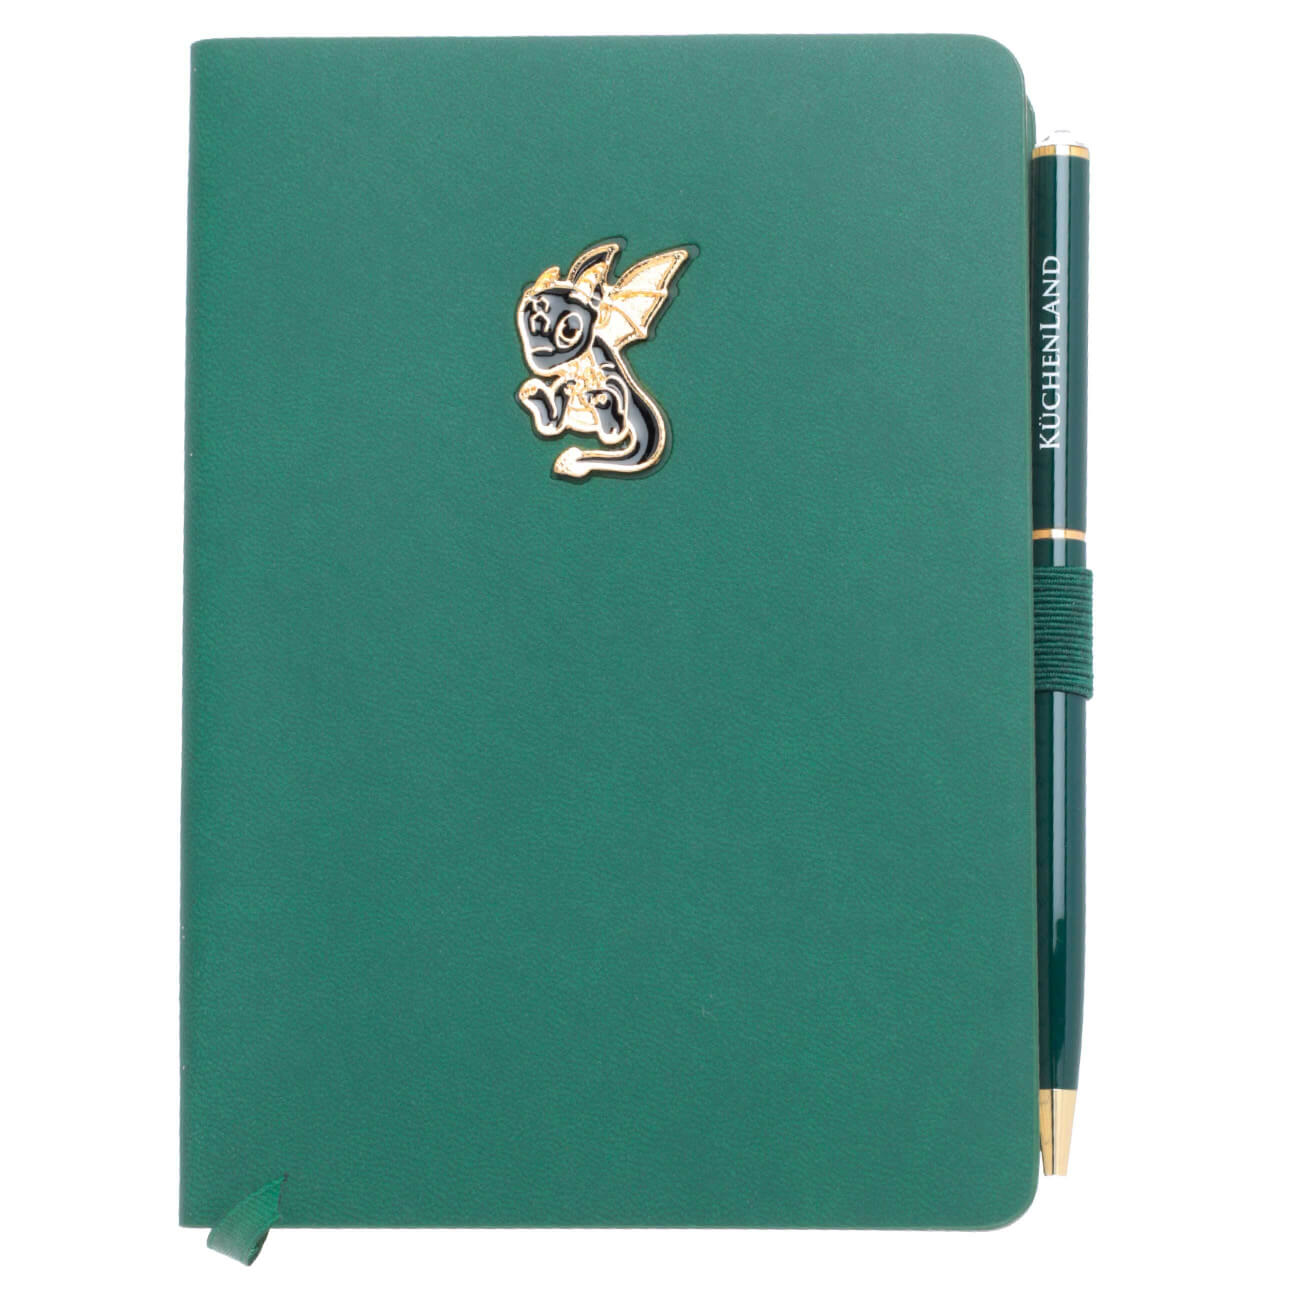 Блокнот для записей, 15х11 см, с ручкой, полиуретан, зеленый, Дракон с крыльями, Dragon spyro блокнот для эскизов canson one а4 100 л 100 г